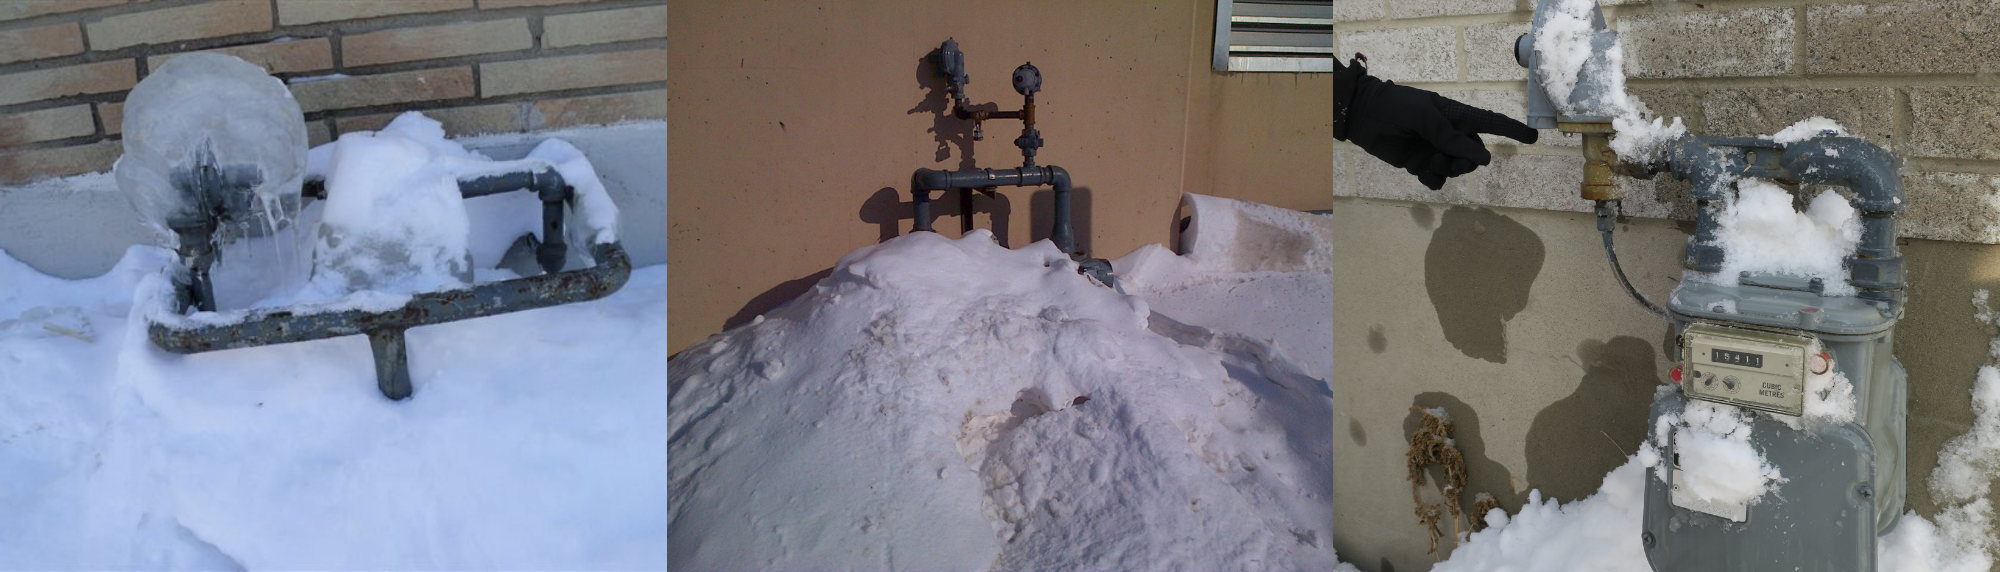 Gas meters in winter